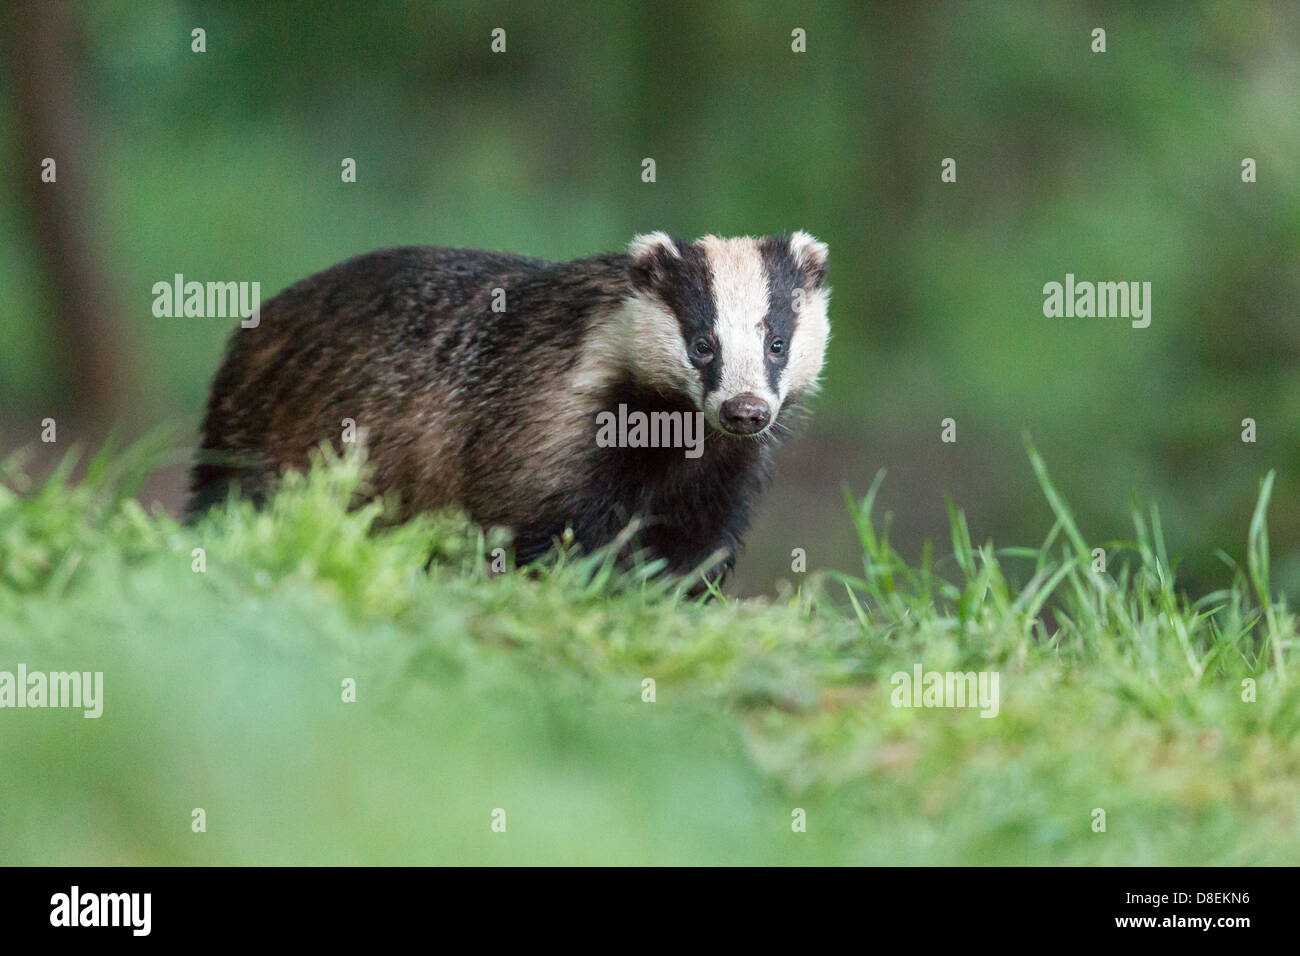 Female Badger (Meles meles) in woodland, portrait. UK Stock Photo